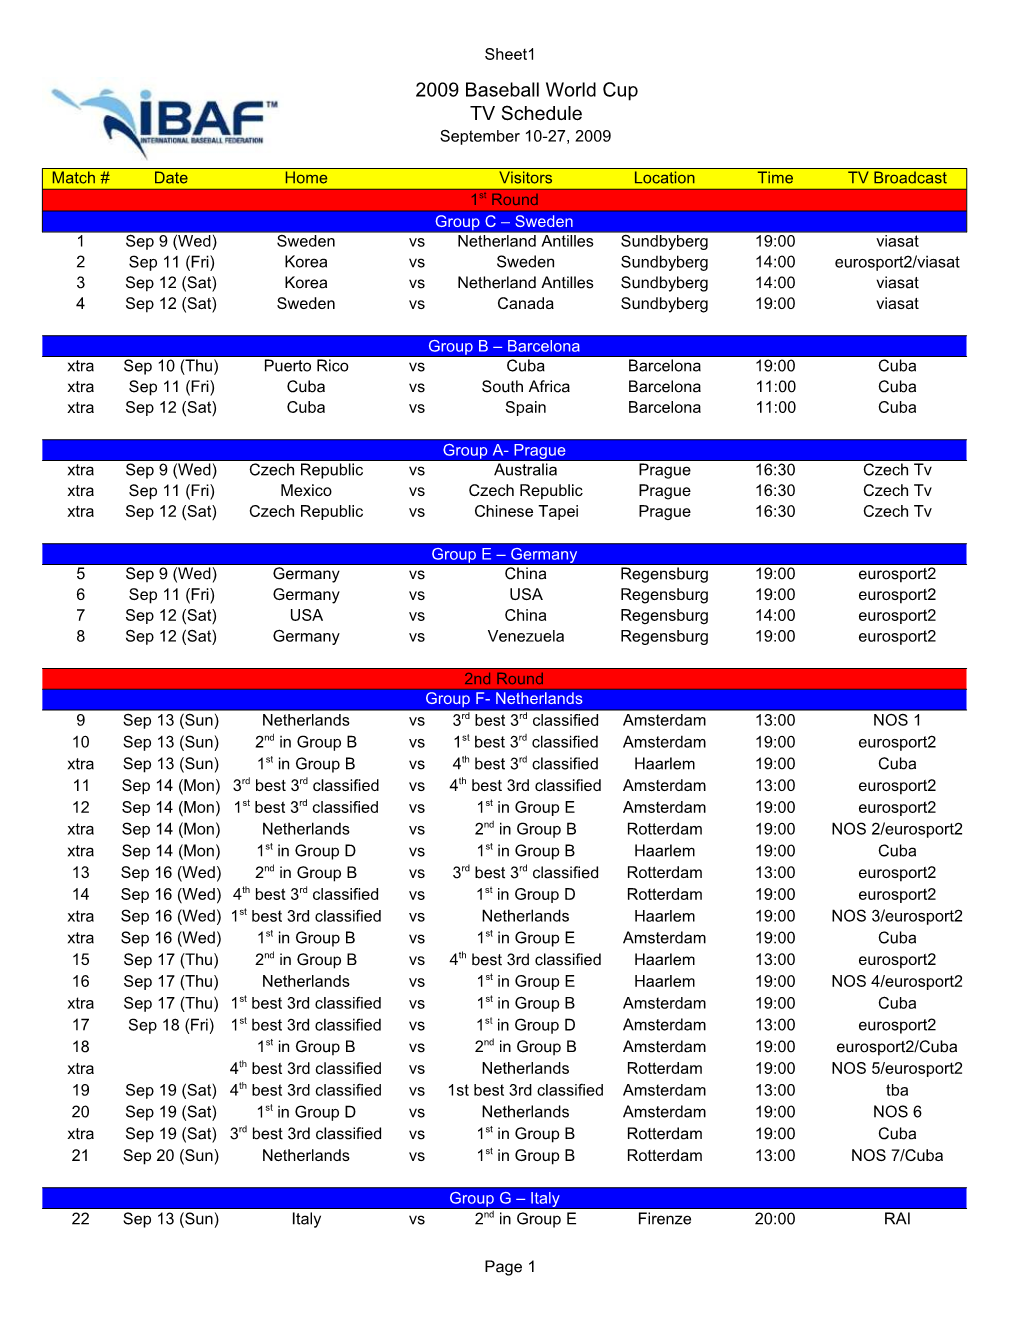 2009 Baseball World Cup TV Schedule September 10-27, 2009